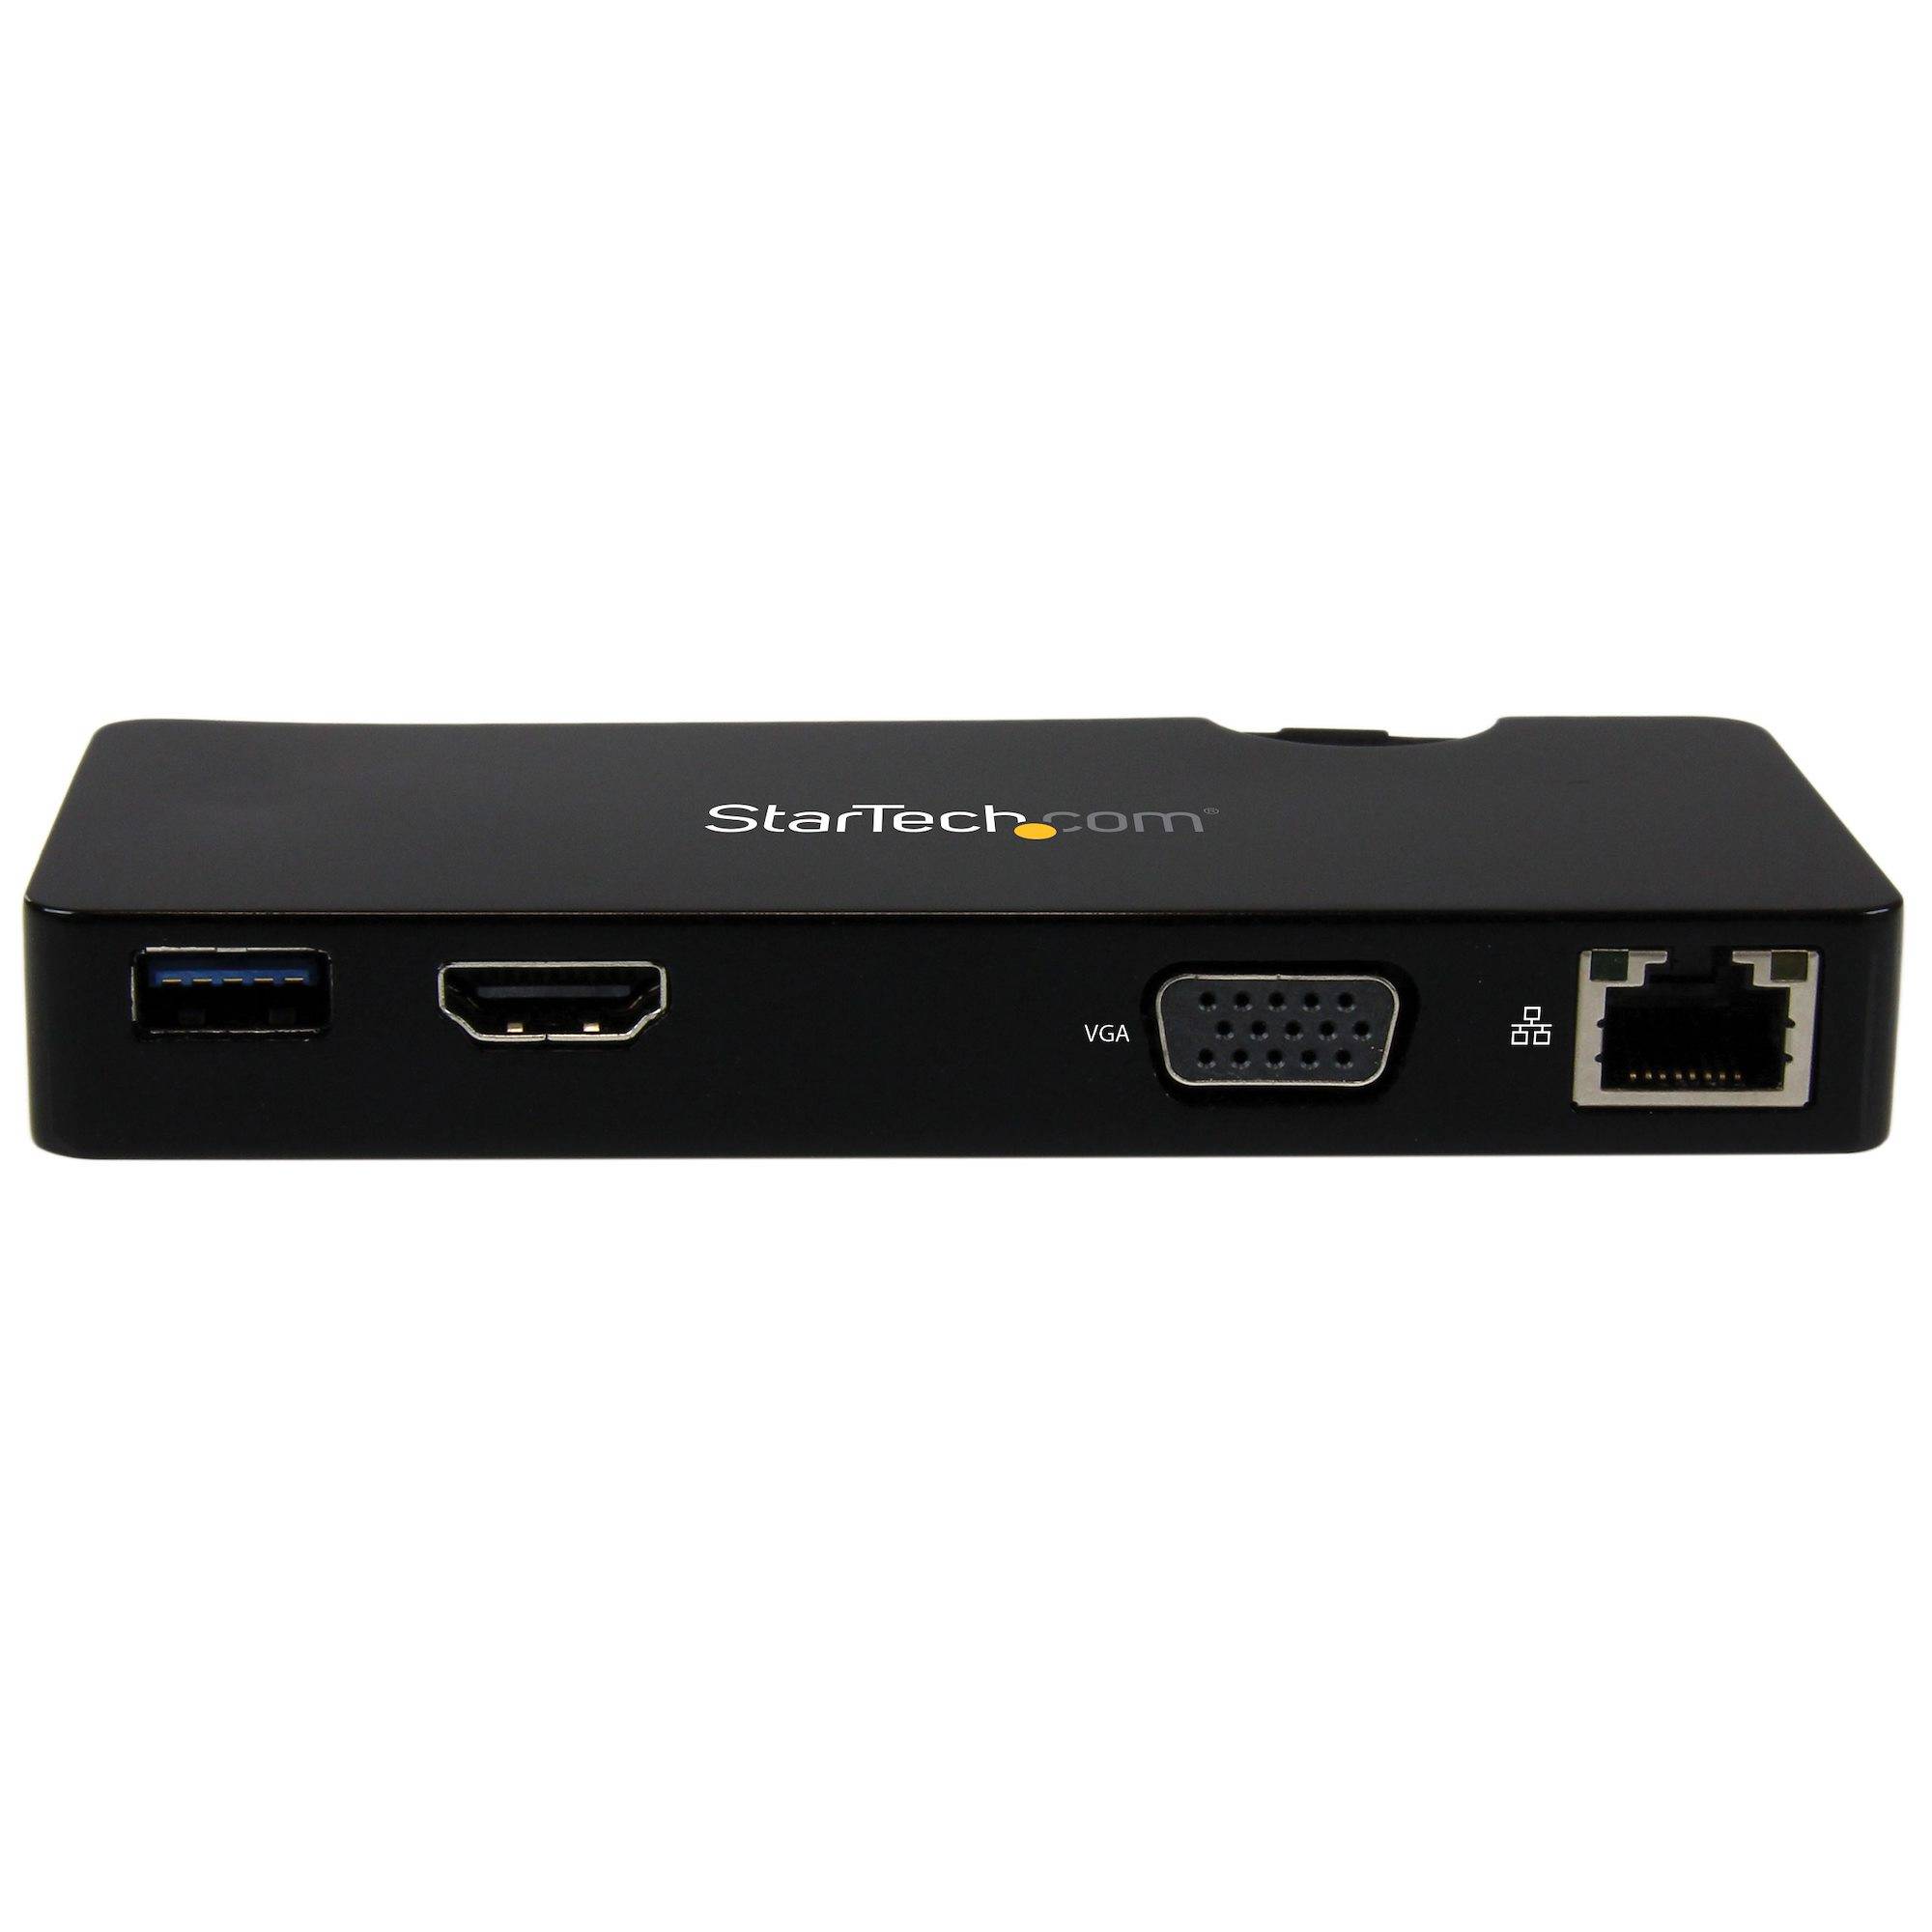 Rca Informatique - image du produit : MINI STATION DACCUEIL USB 3.0 AVEC HDMI OU VGA GBE ET USB 3.0